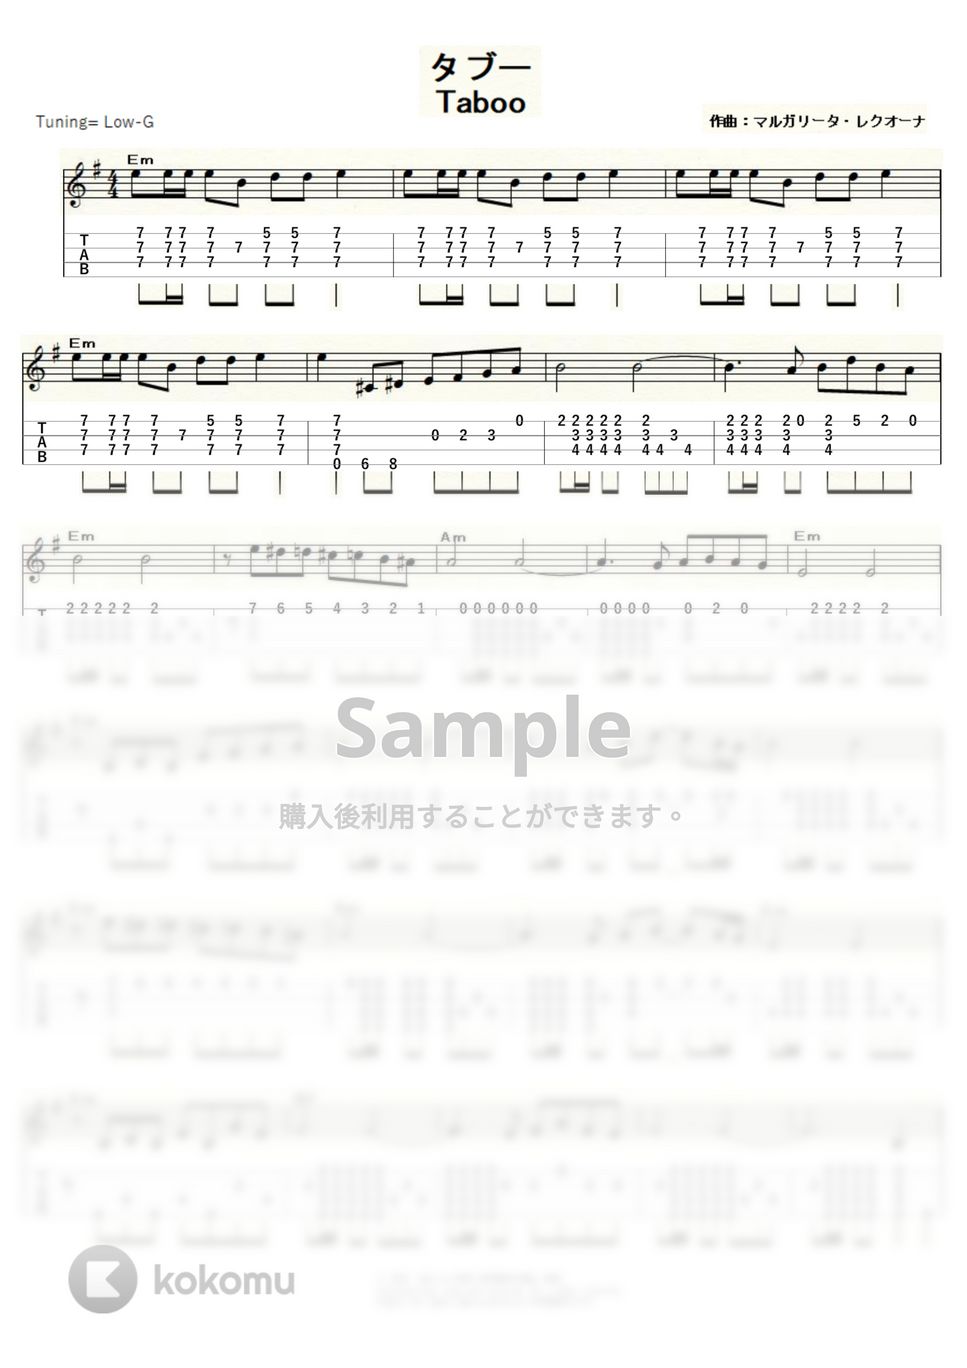 マルガリータ・レクオーナ - タブー (ｳｸﾚﾚｿﾛ/Low-G/中級) by ukulelepapa